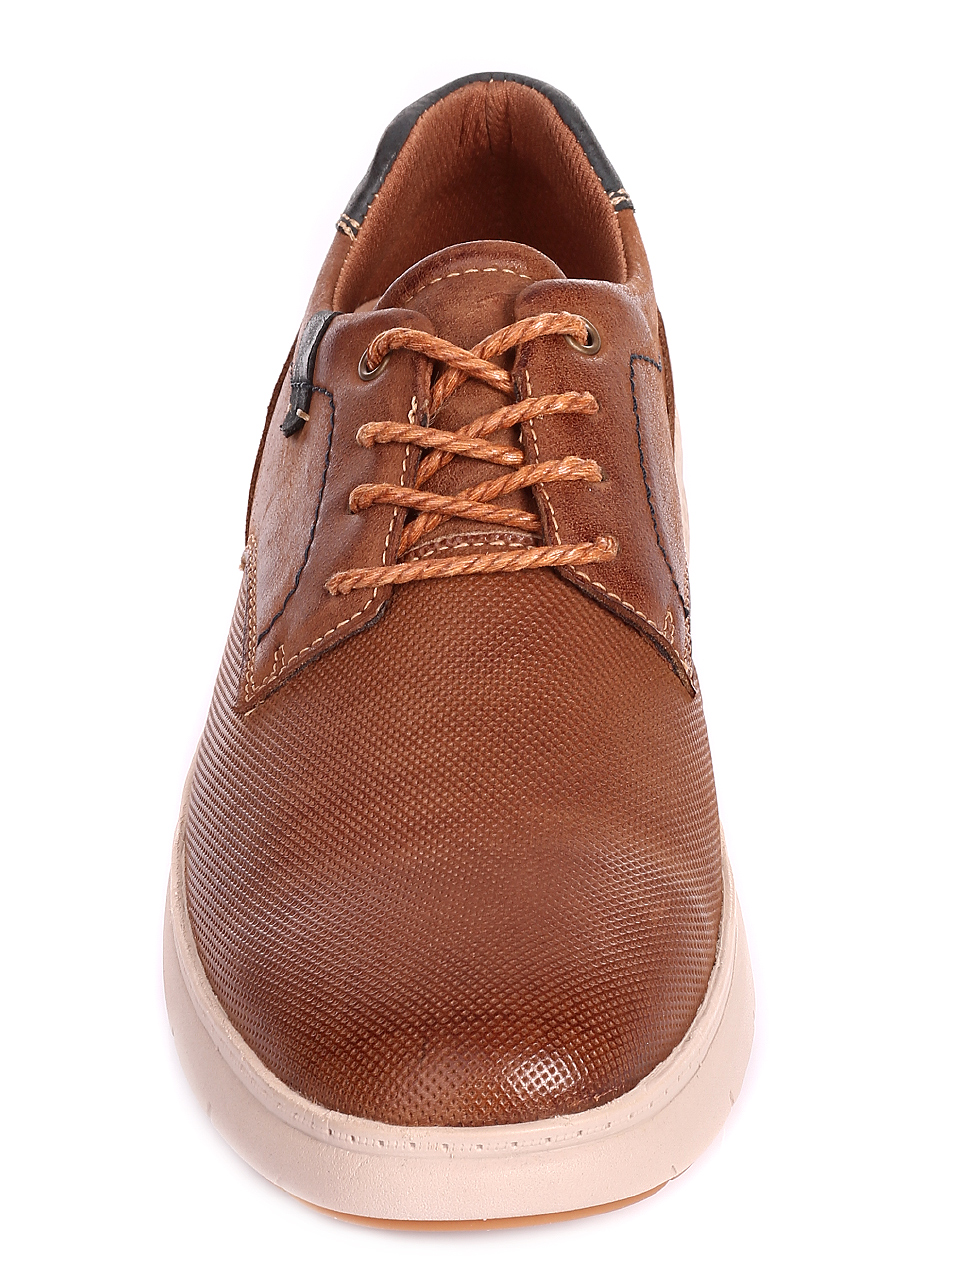 Ежедневни мъжки обувки от естествена кожа и естествен набук 7X-20248 brown